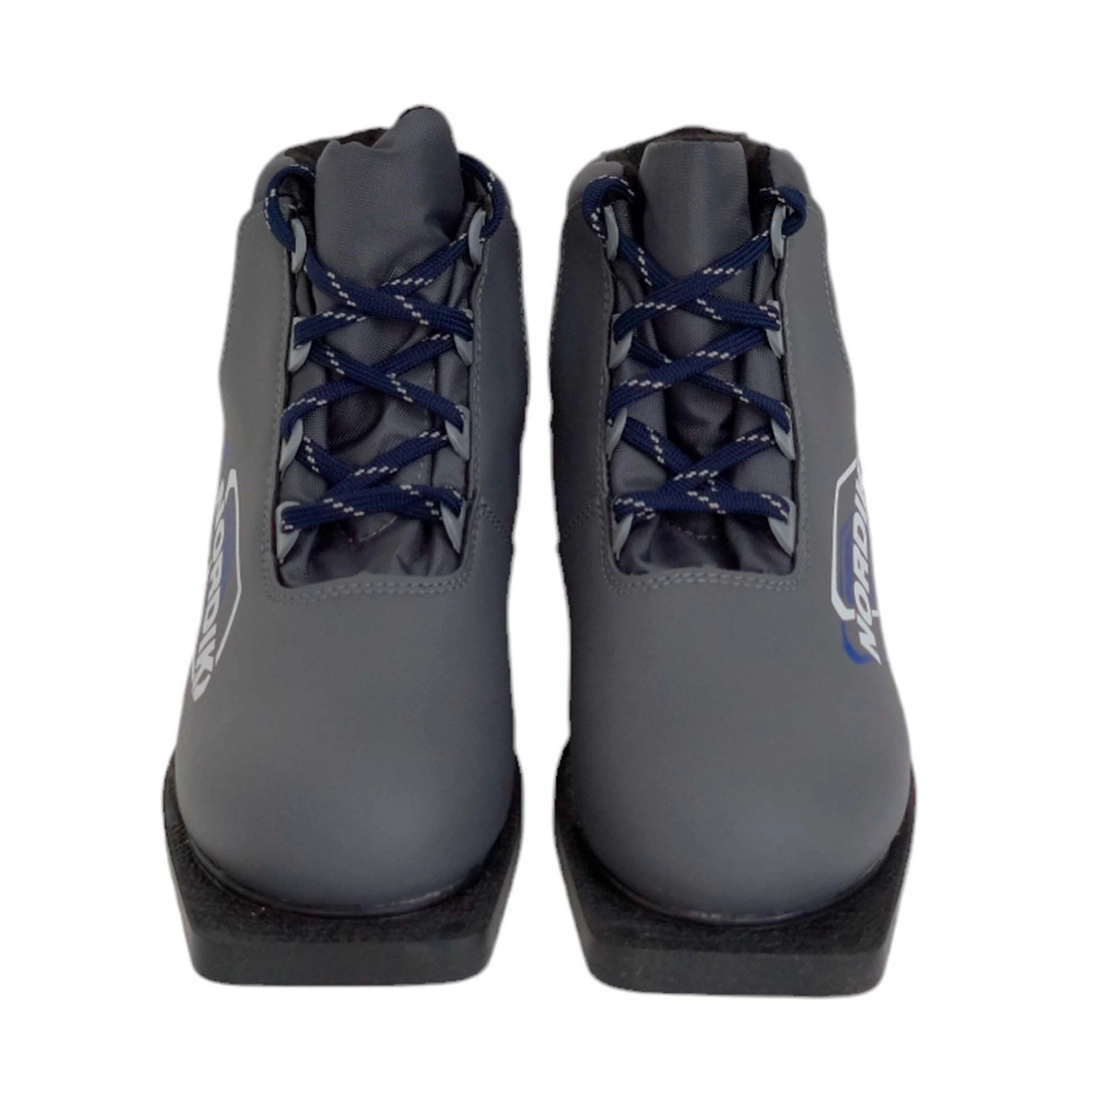 Ботинки лыжные SPINE Nordik 75мм, цвет серый